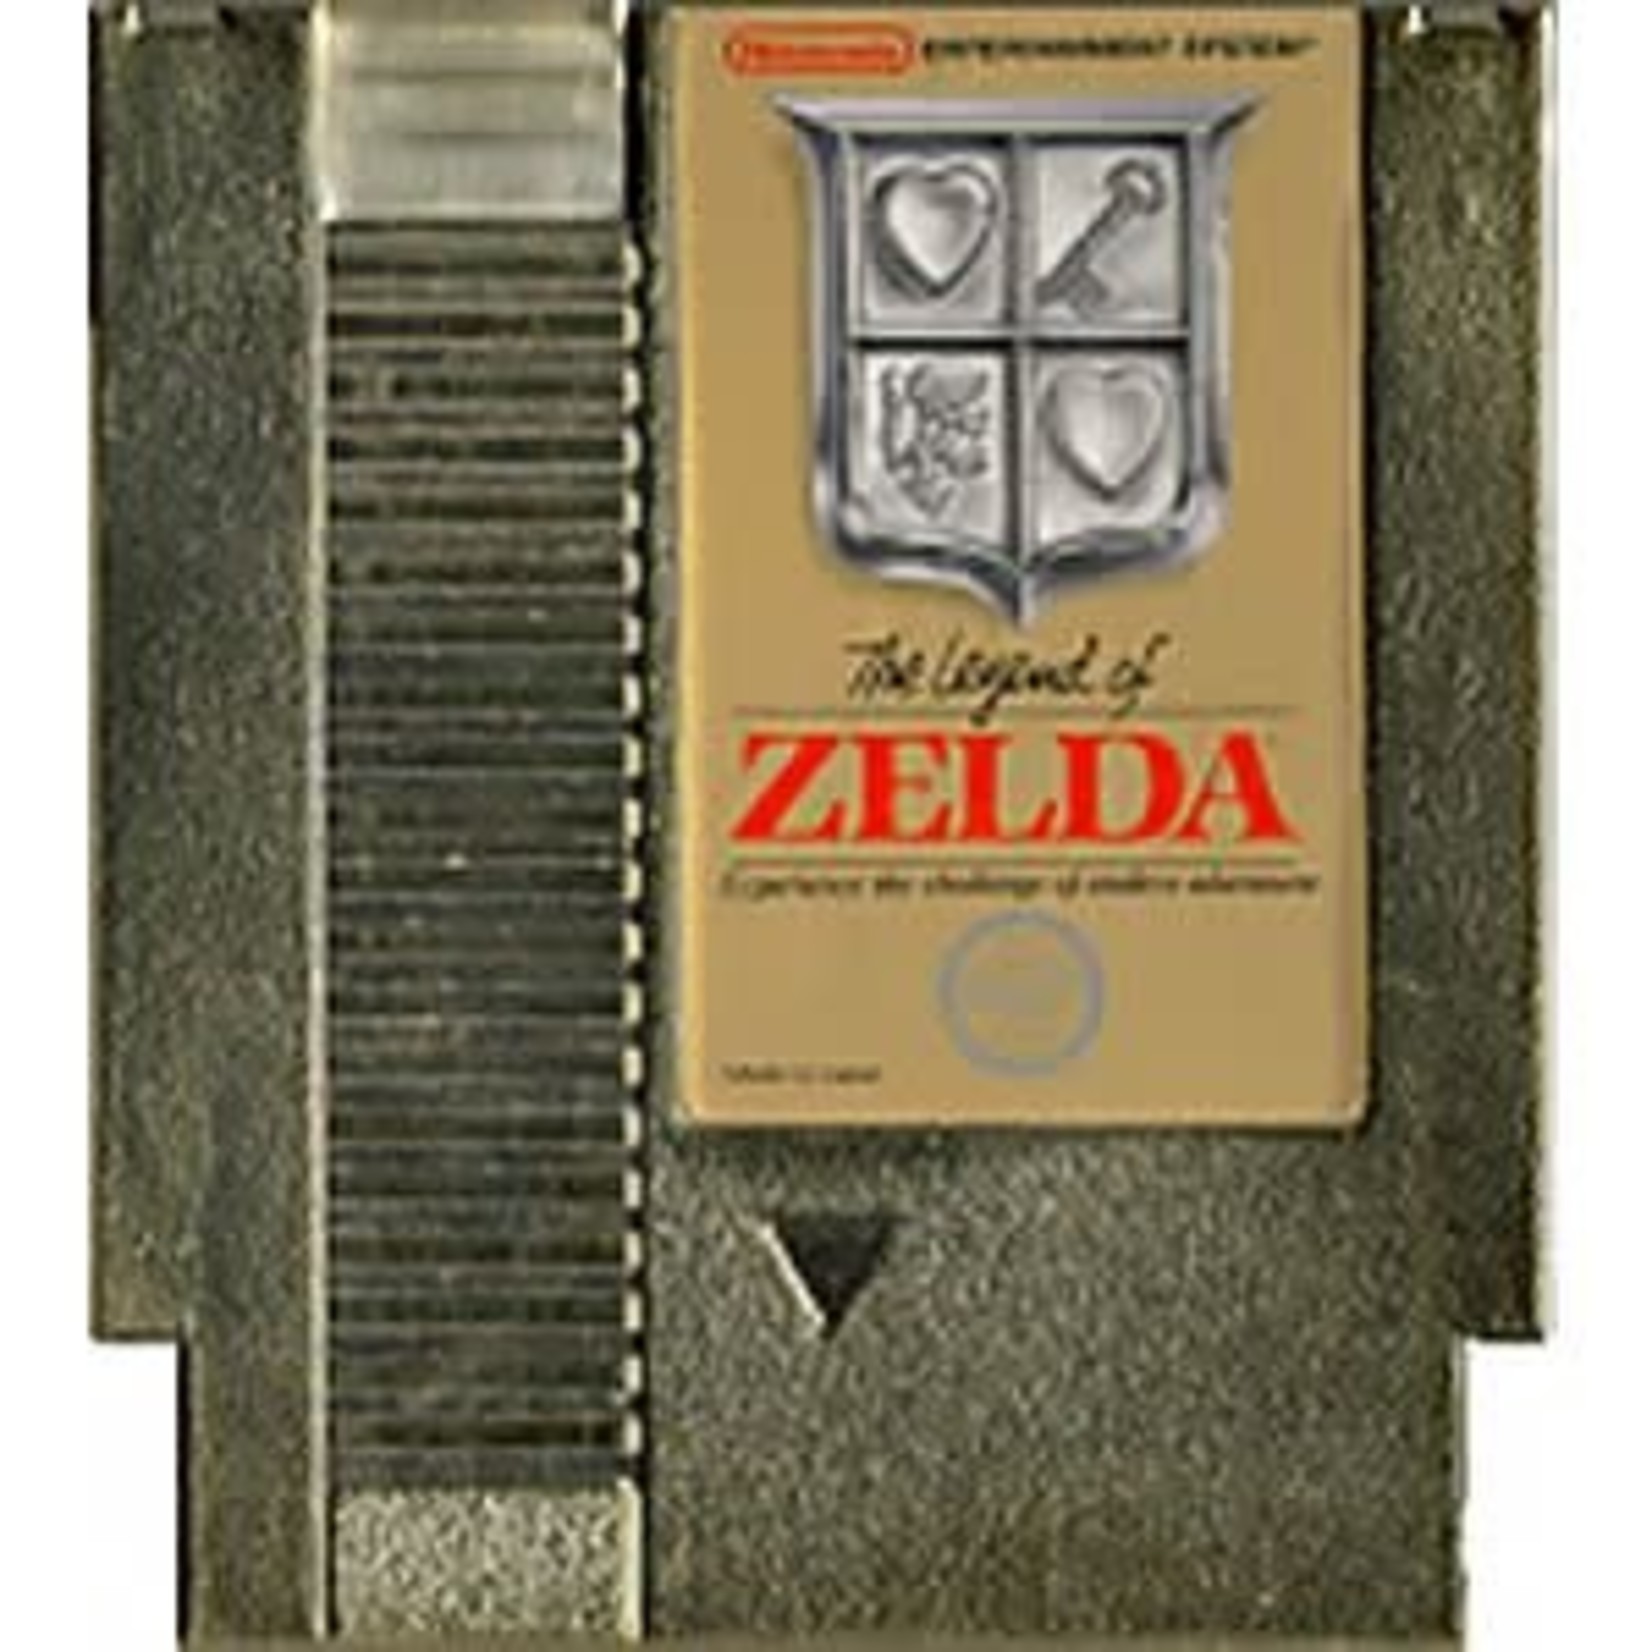 Legend of Zelda (NES)